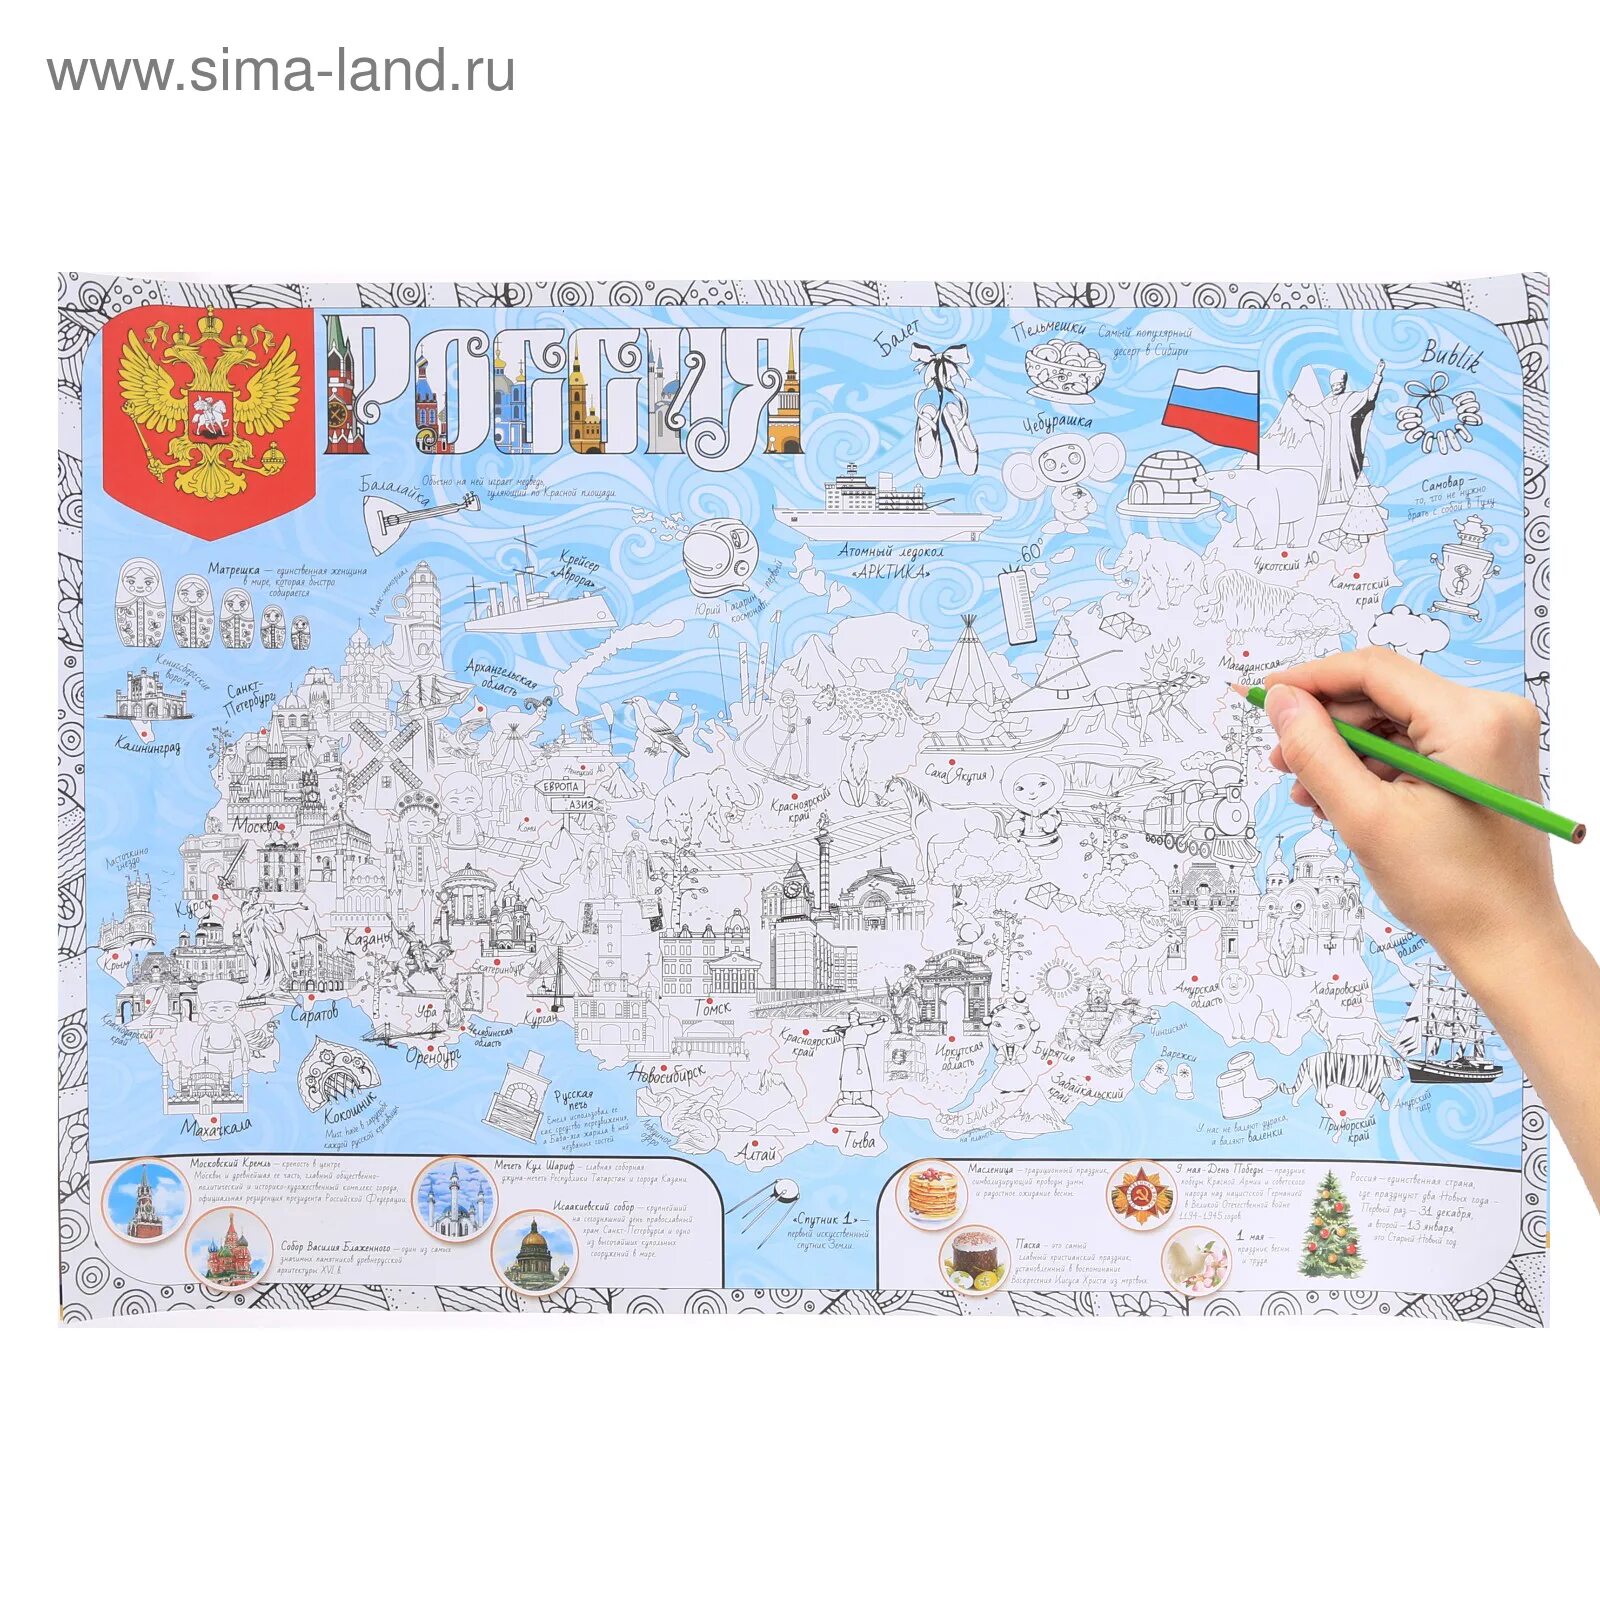 Map of Russia for preschool children #19